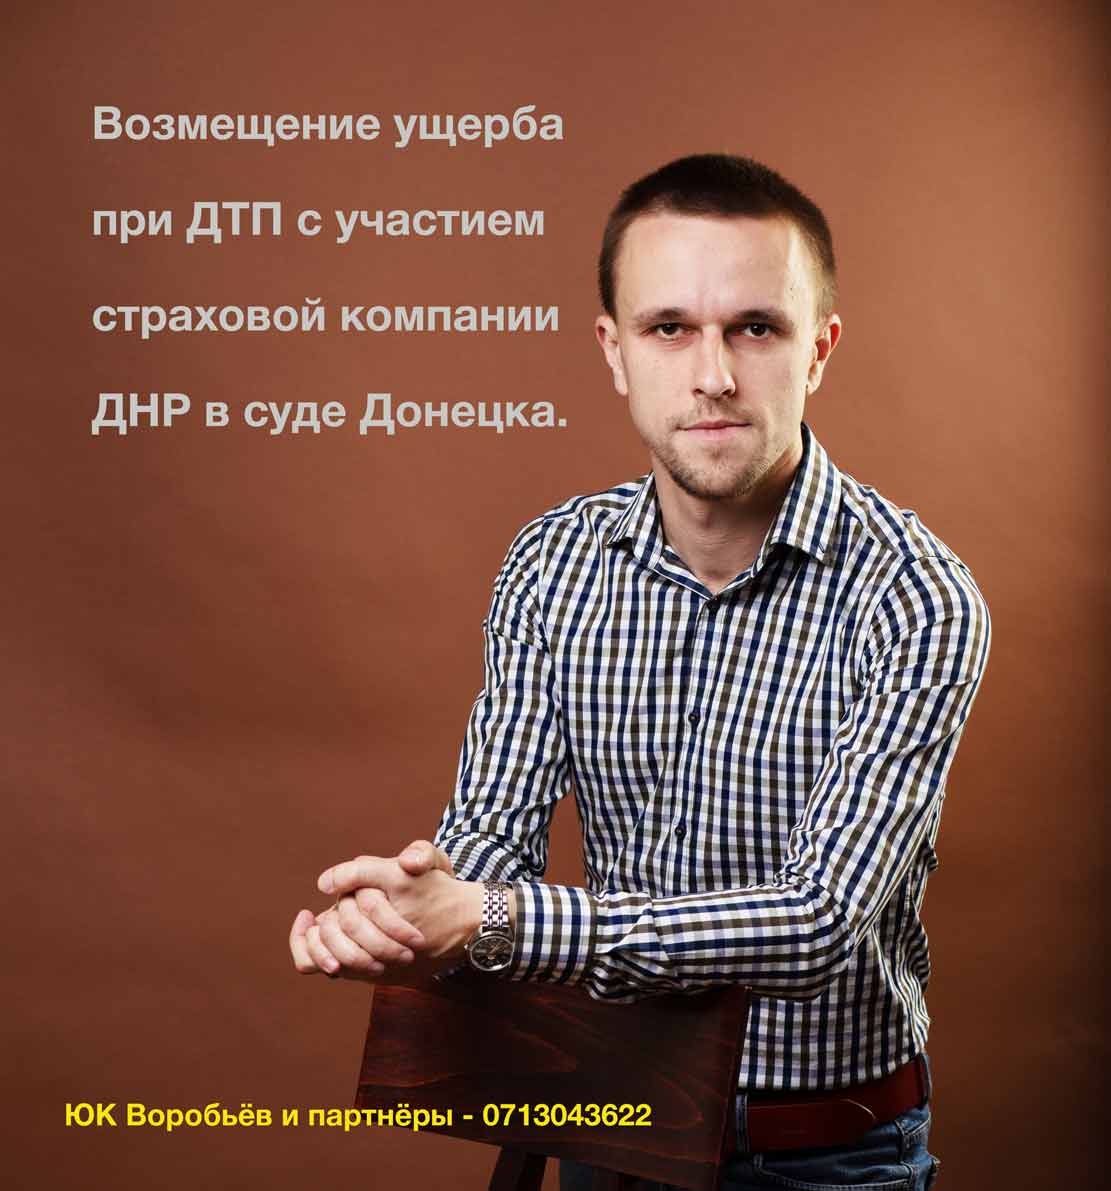 Адвокаты ЮК ВиП представляют клиента в споре по ДТП с участием страховой компании ДНР